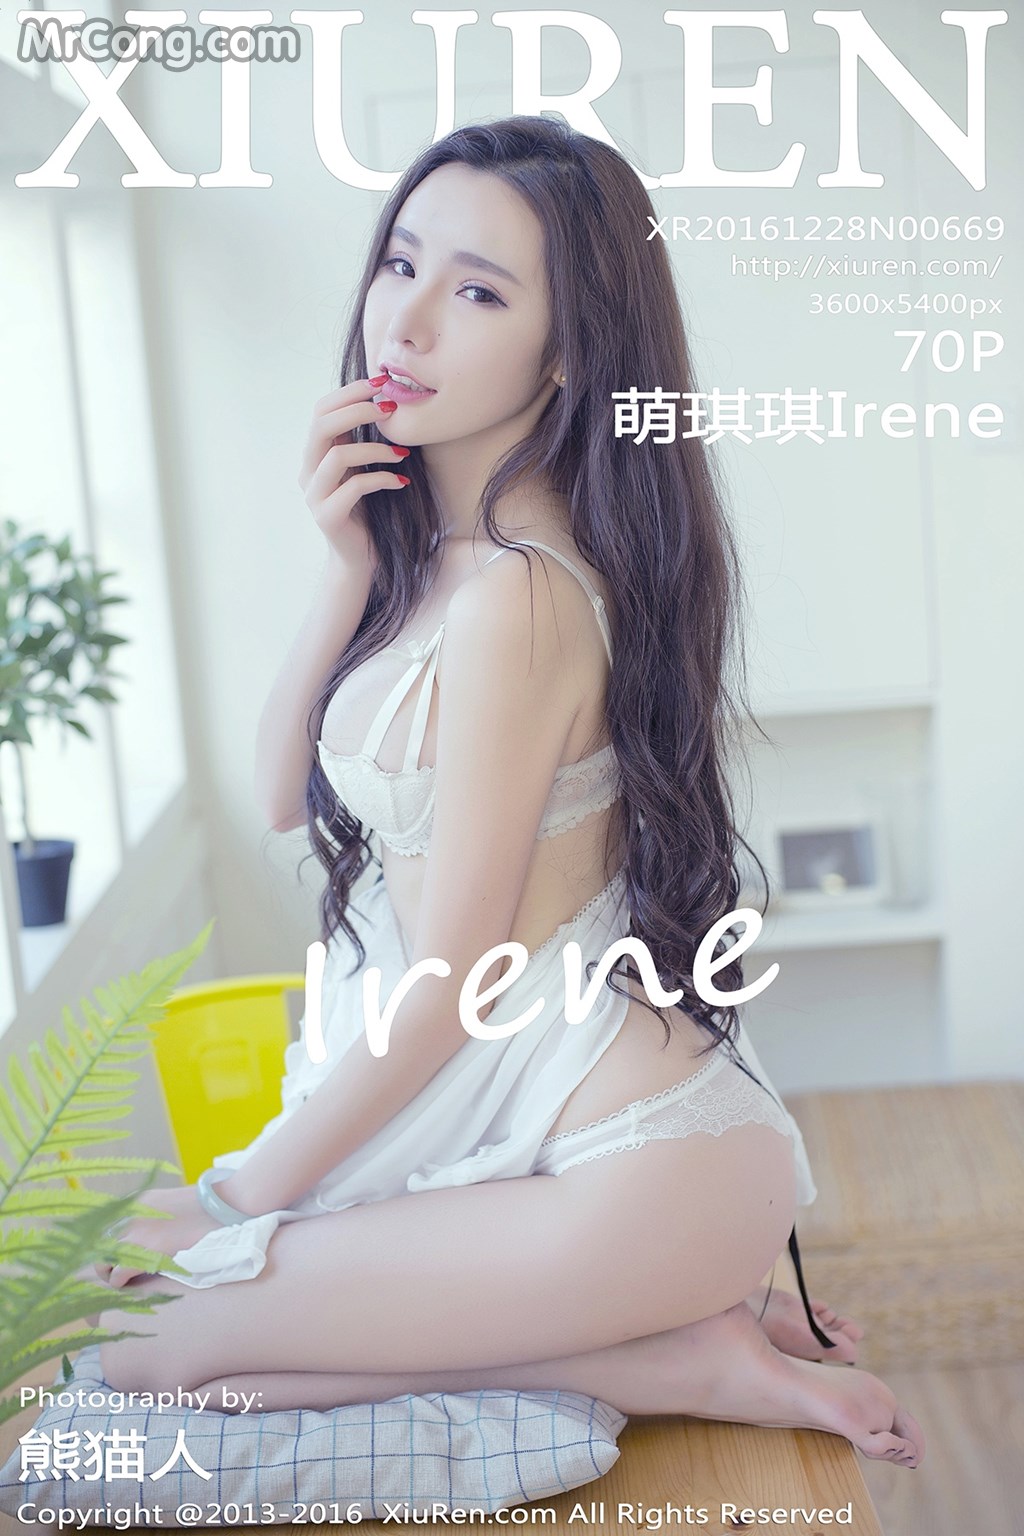 XIUREN No.669: Model Irene (萌 琪琪) (71 photos) photo 1-0